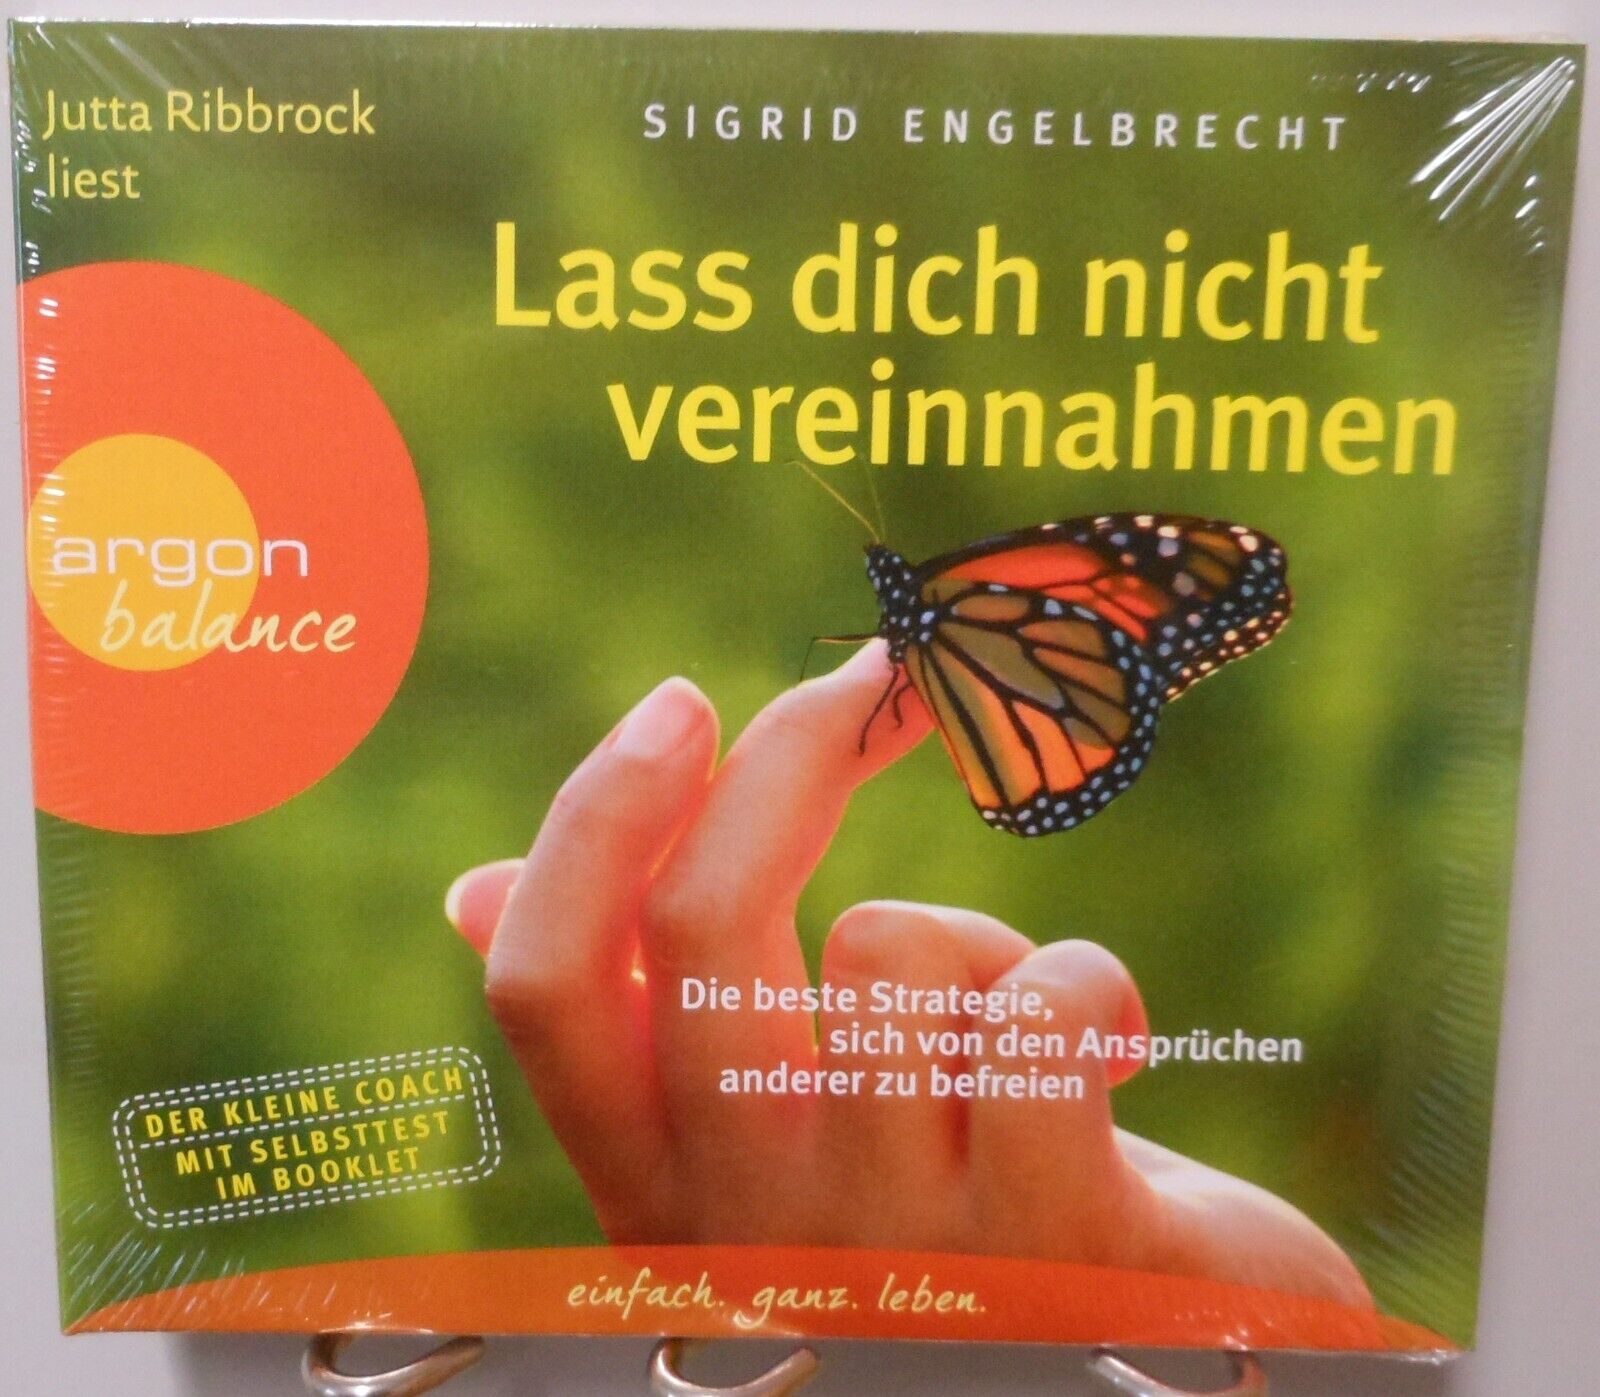 Hörbuch Gesundheit CD Strategie Lass dich nicht vereinnahmen Engelbrecht #T1194 - Sigrid Engelbrecht